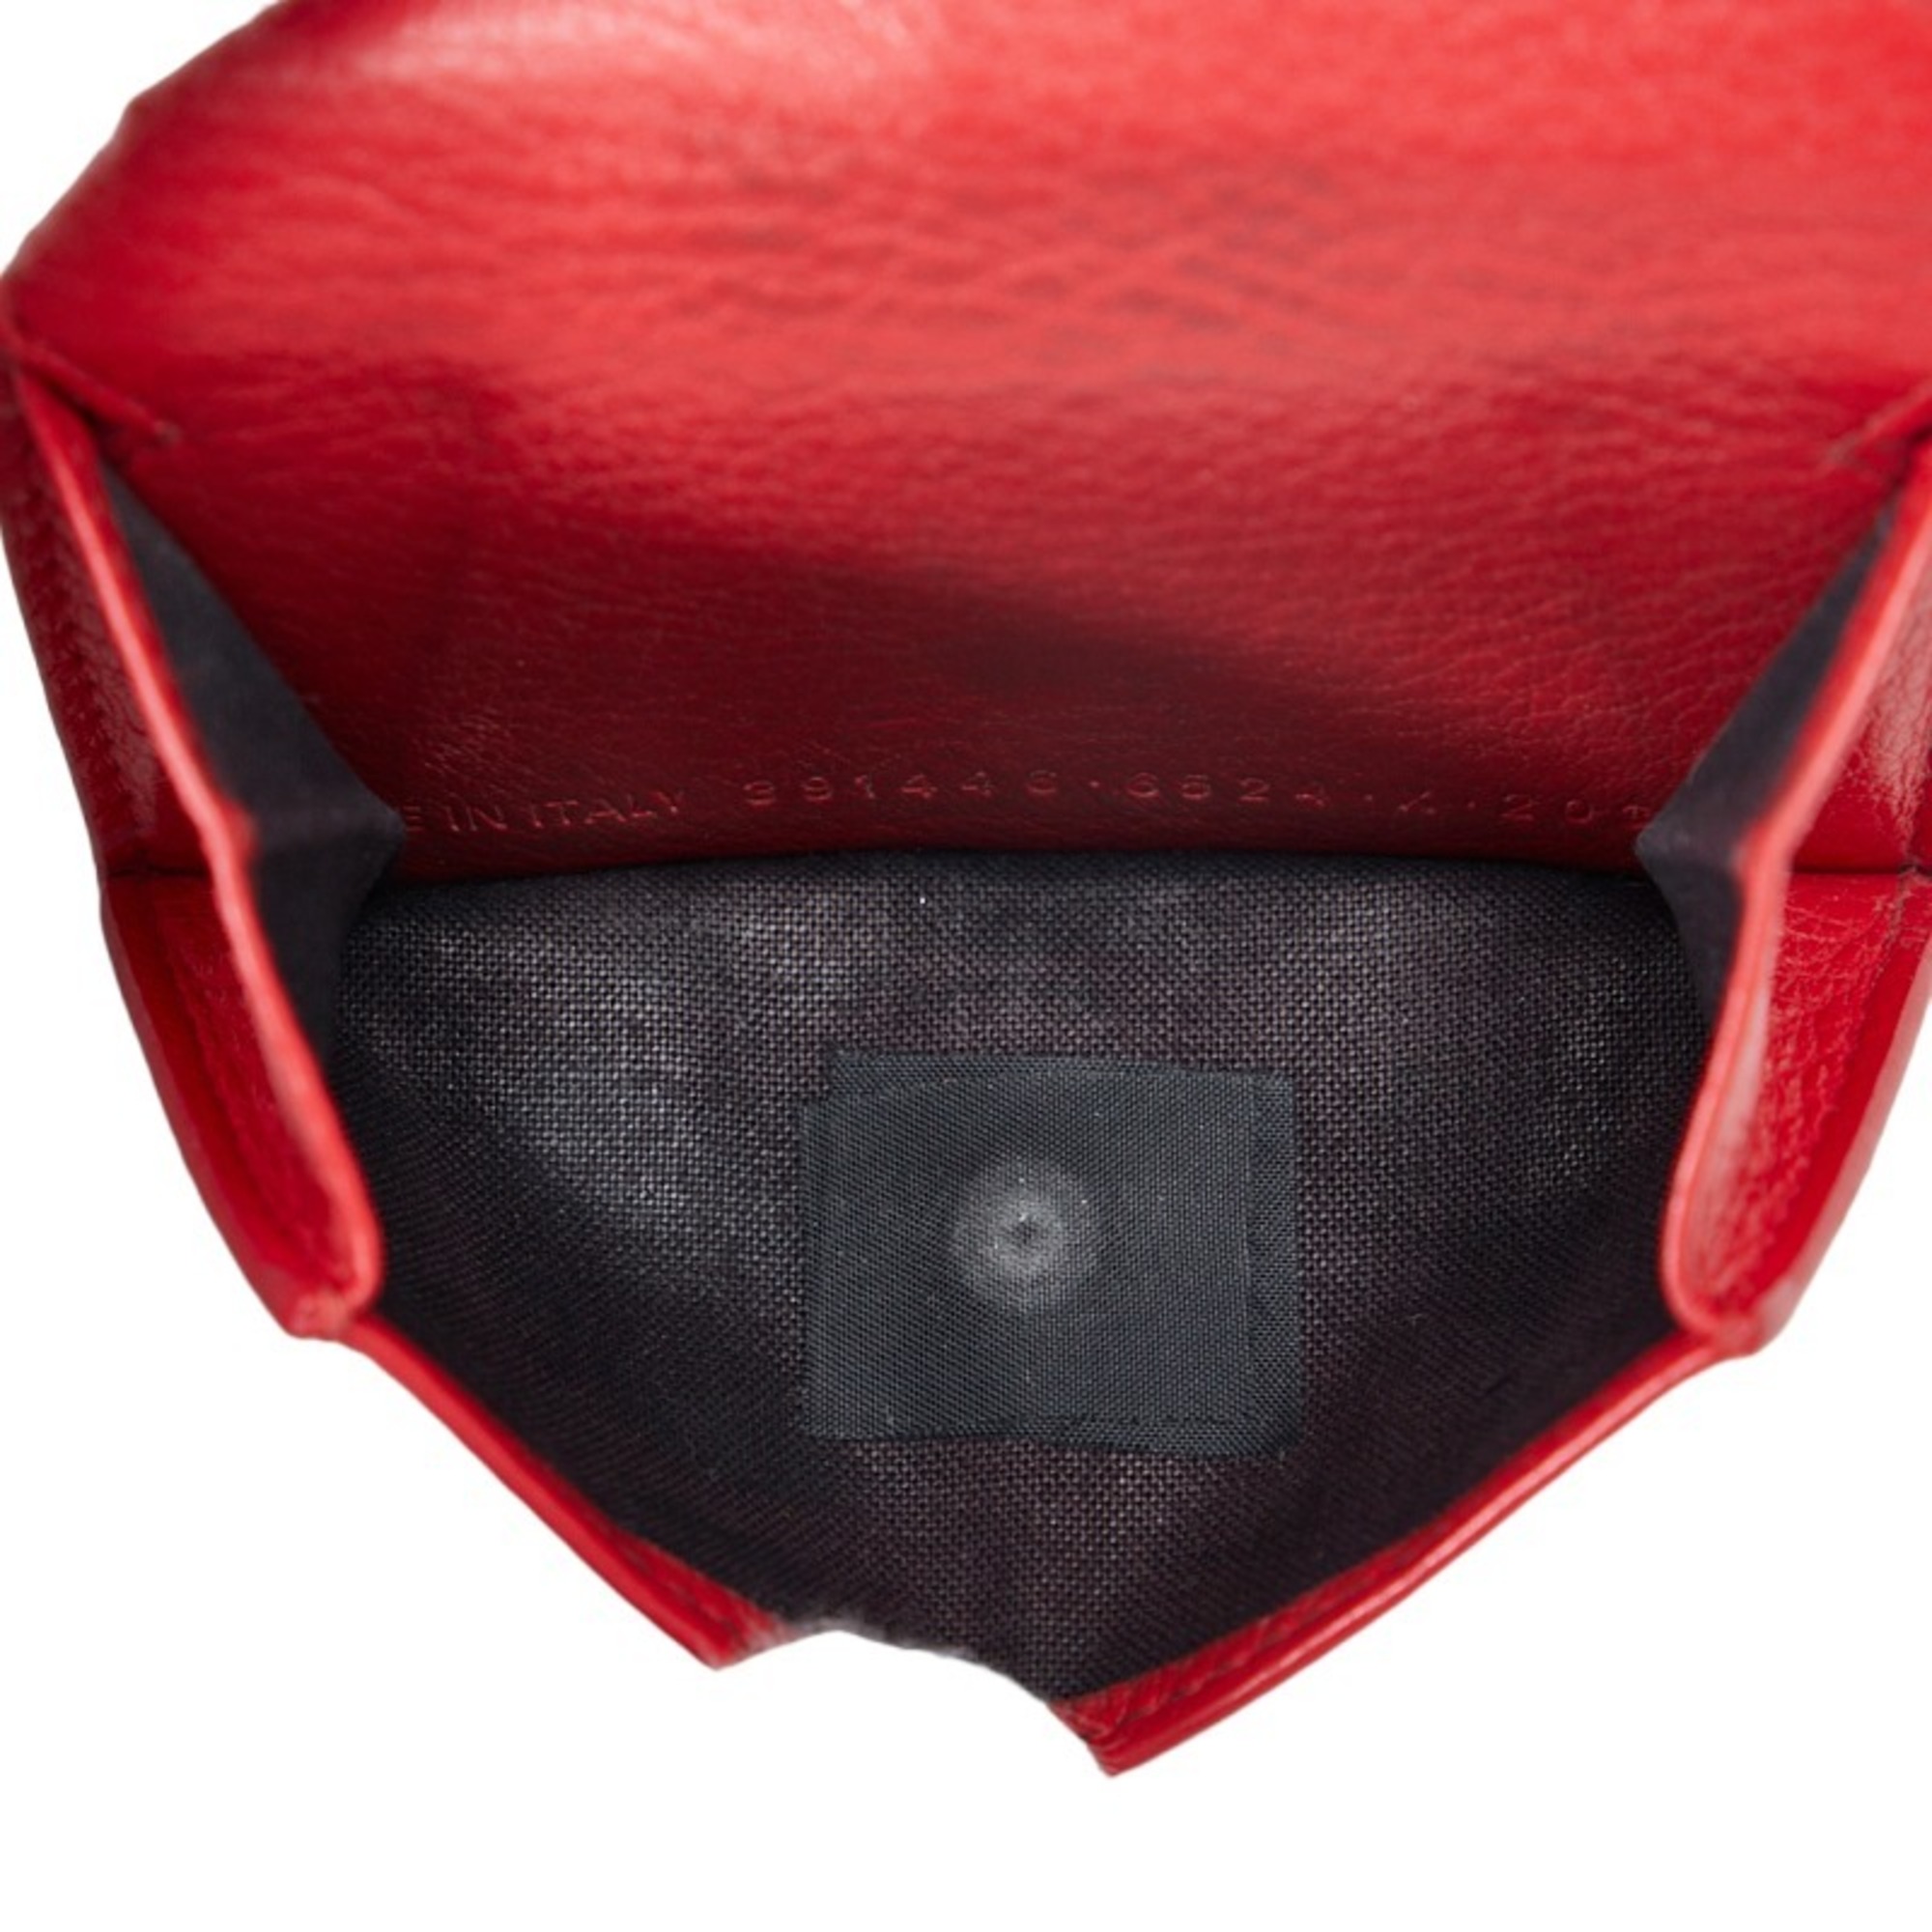 Balenciaga Paper Trifold Wallet 391446 Red Leather Women's BALENCIAGA